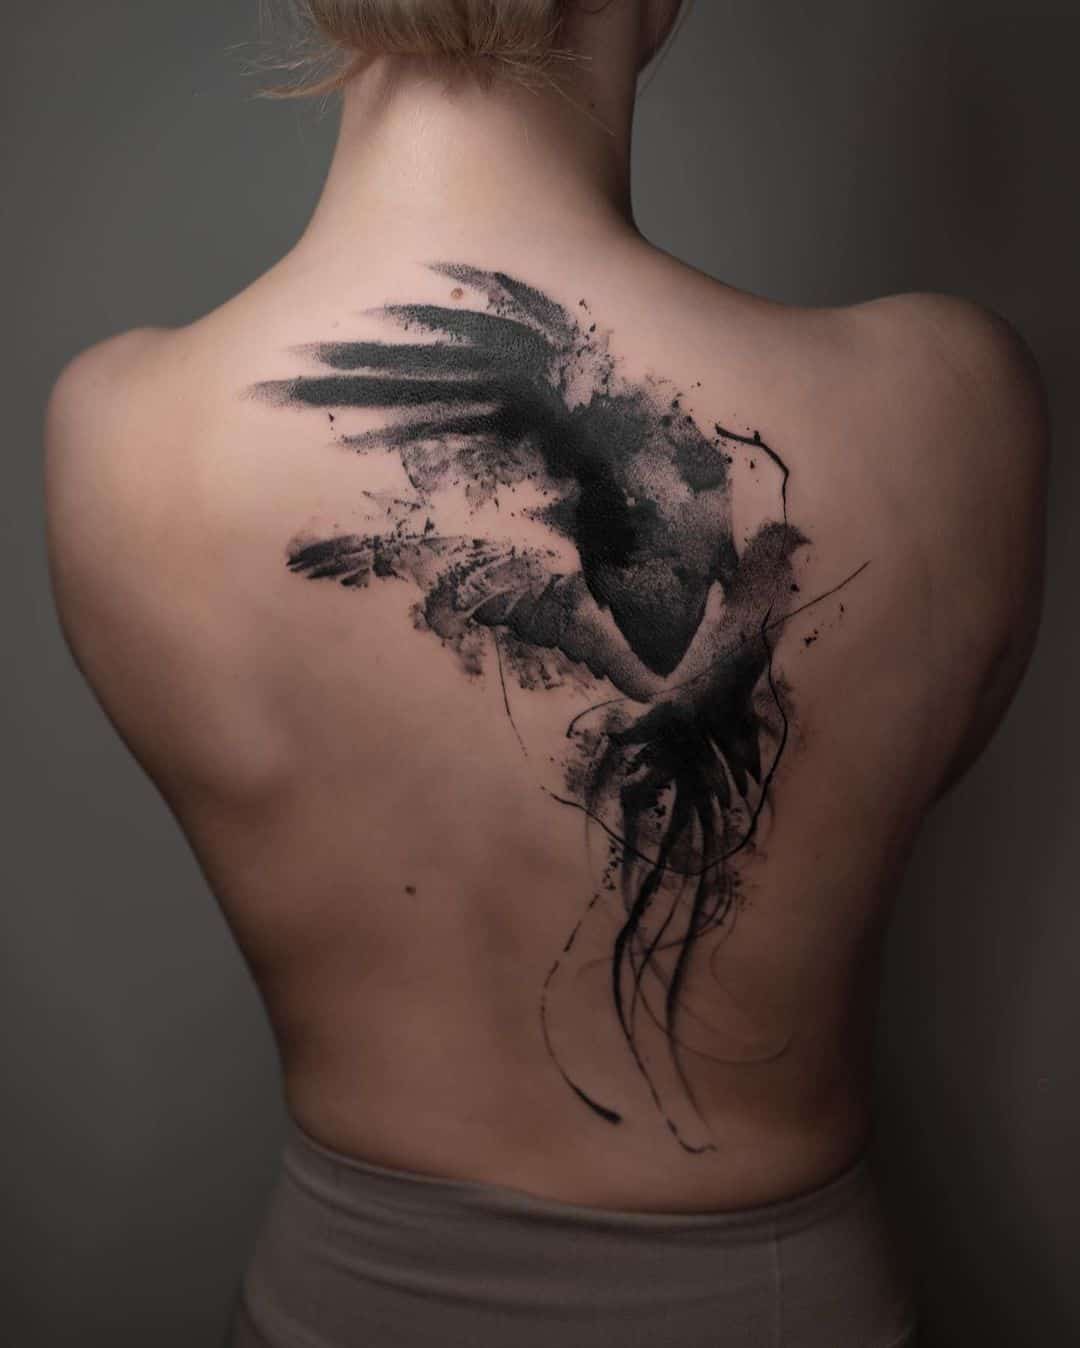 Beaautiful bird abstract tattoo on back by noiiberlin